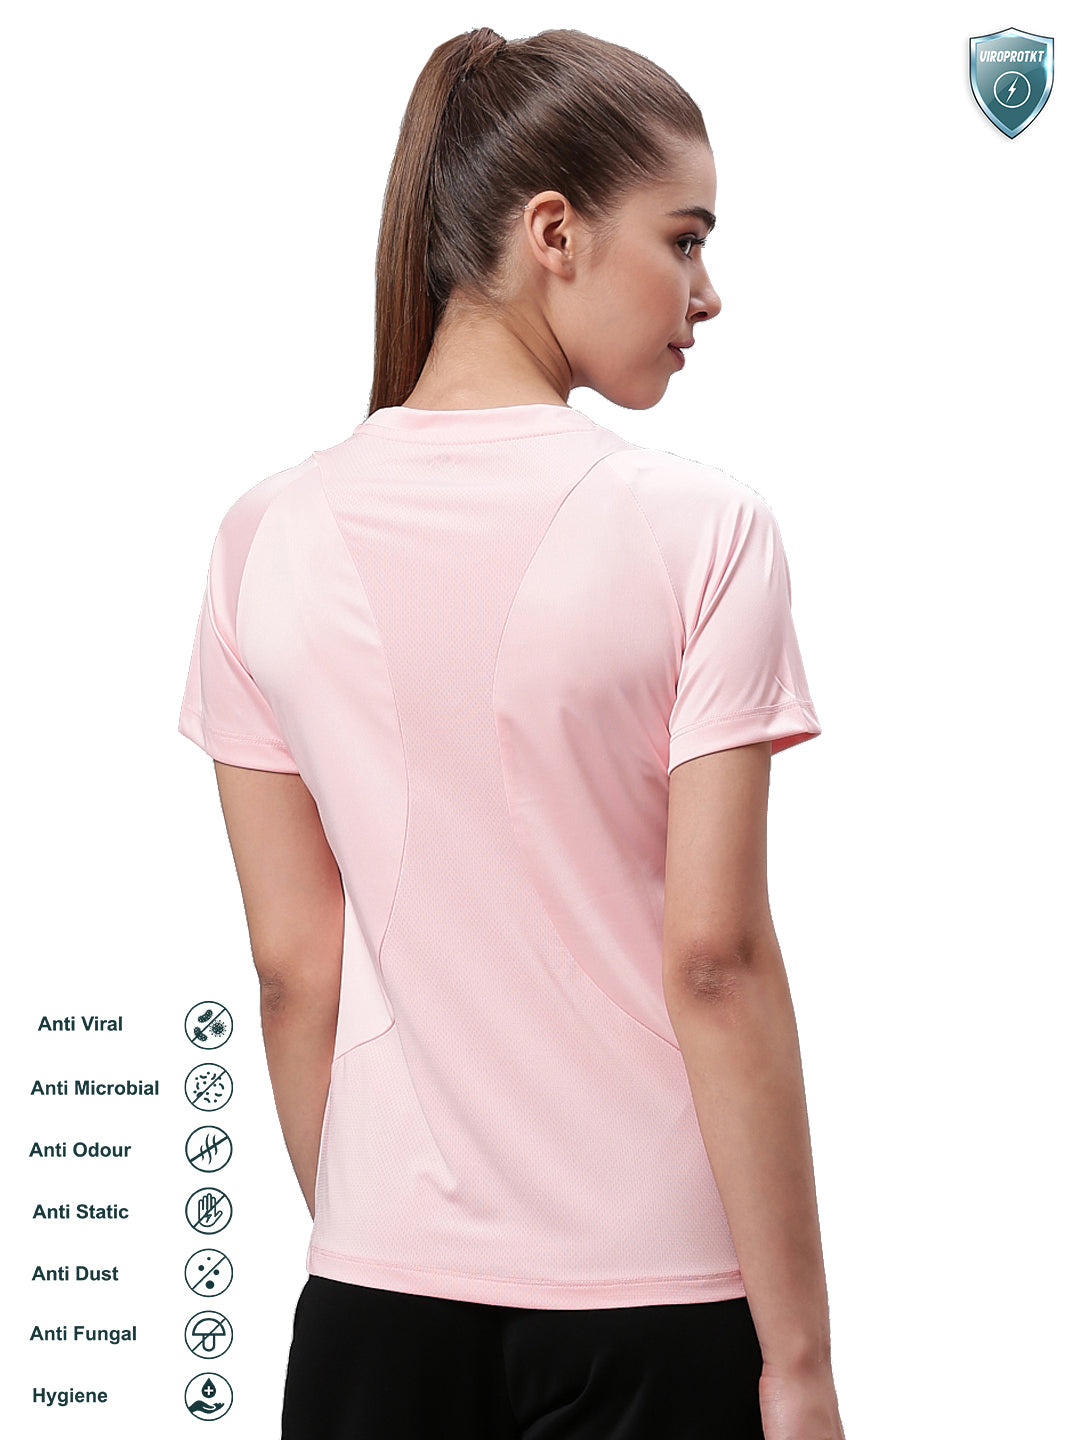 Alcis Women Pink Solid Round Neck VIROPROTKT Training T-shirt